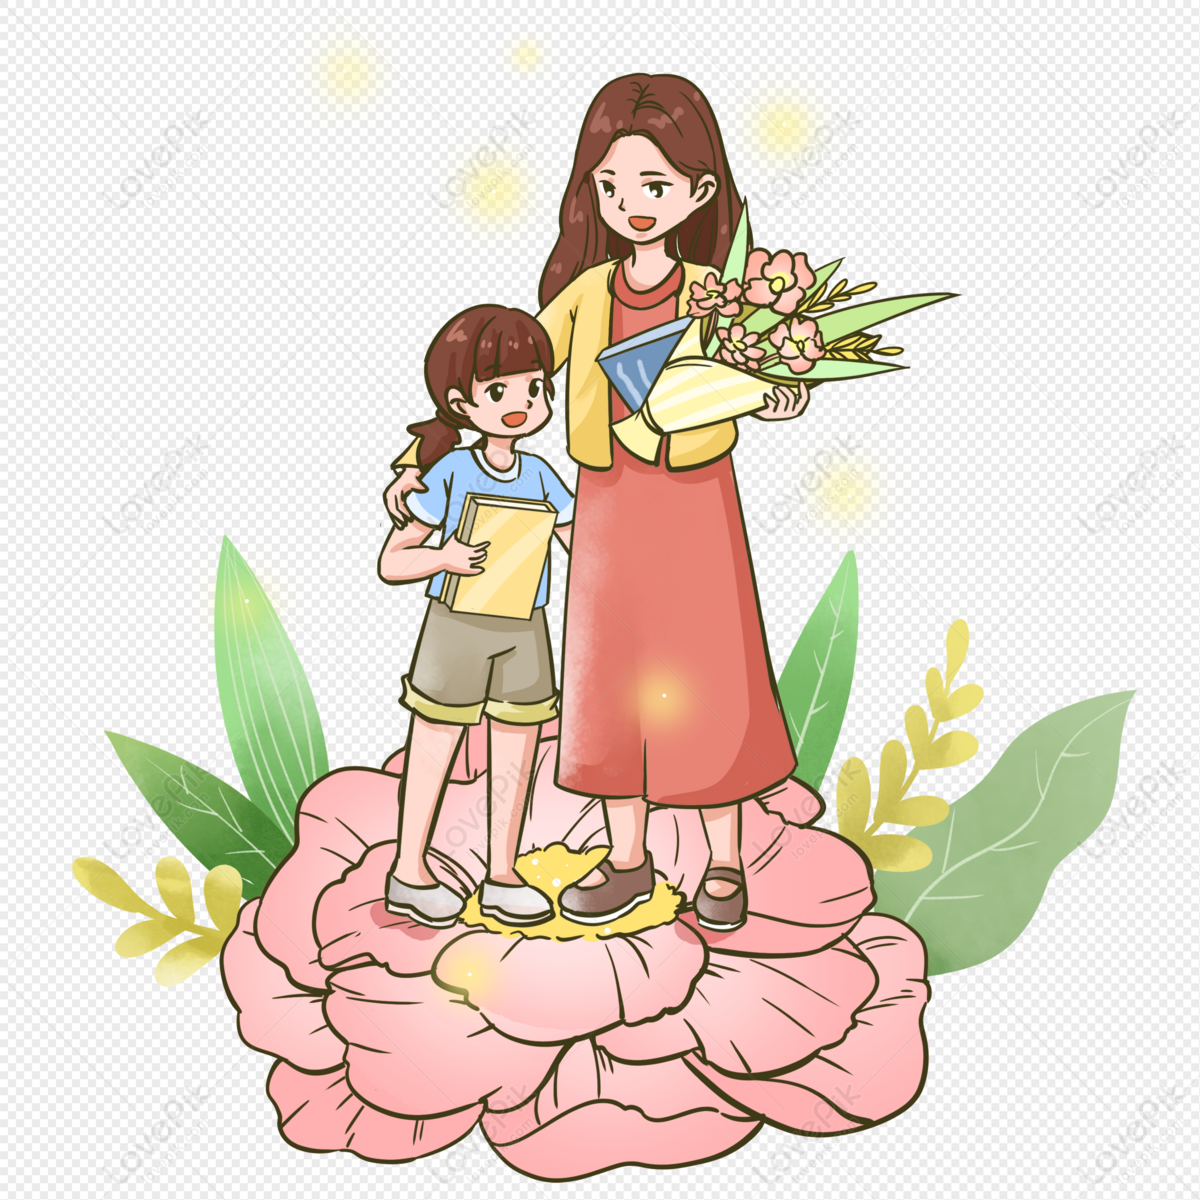 Bức ảnh về tặng hoa cho giáo viên sẽ đưa bạn đến một tinh thần cảm động. Hãy xem các tay trẻ đầy nghị lực tặng hoa cho cô giáo, những bó hoa được sắp xếp đẹp mắt, tinh tế cùng thông điệp ý nghĩa sẽ tỏ ra đặc biệt. Thưởng thức bức ảnh và cảm nhận tình yêu thương dành cho các giáo viên.